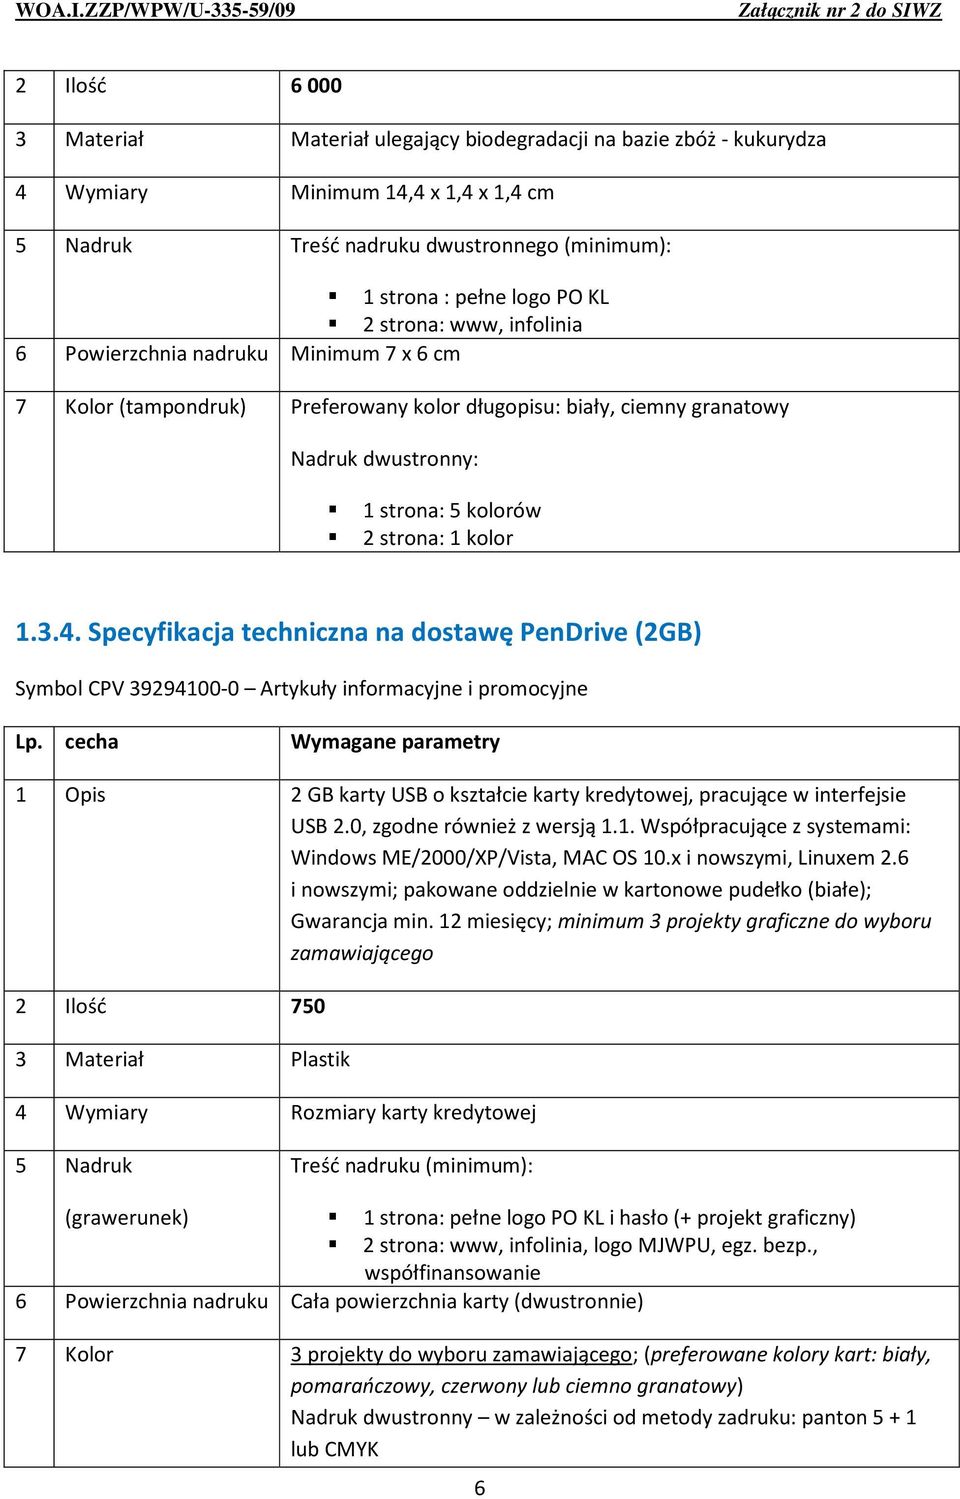 Specyfikacja techniczna na dostawę PenDrive (2GB) 1 Opis 2 GB karty USB o kształcie karty kredytowej, pracujące w interfejsie USB 2.0, zgodne również z wersją 1.1. Współpracujące z systemami: Windows ME/2000/XP/Vista, MAC OS 10.